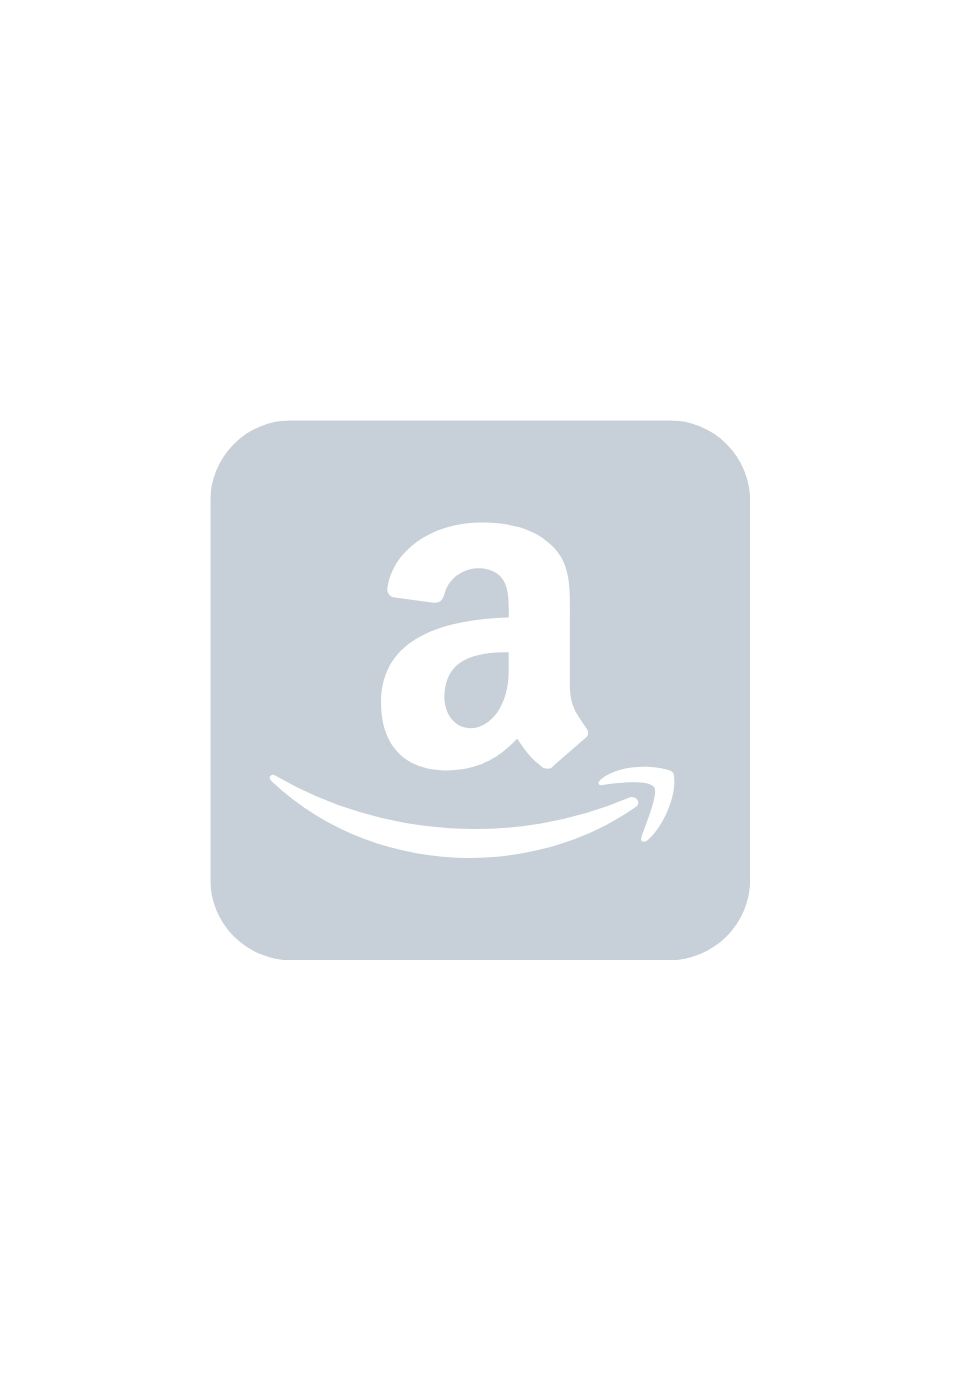 Amazon Live Streamers